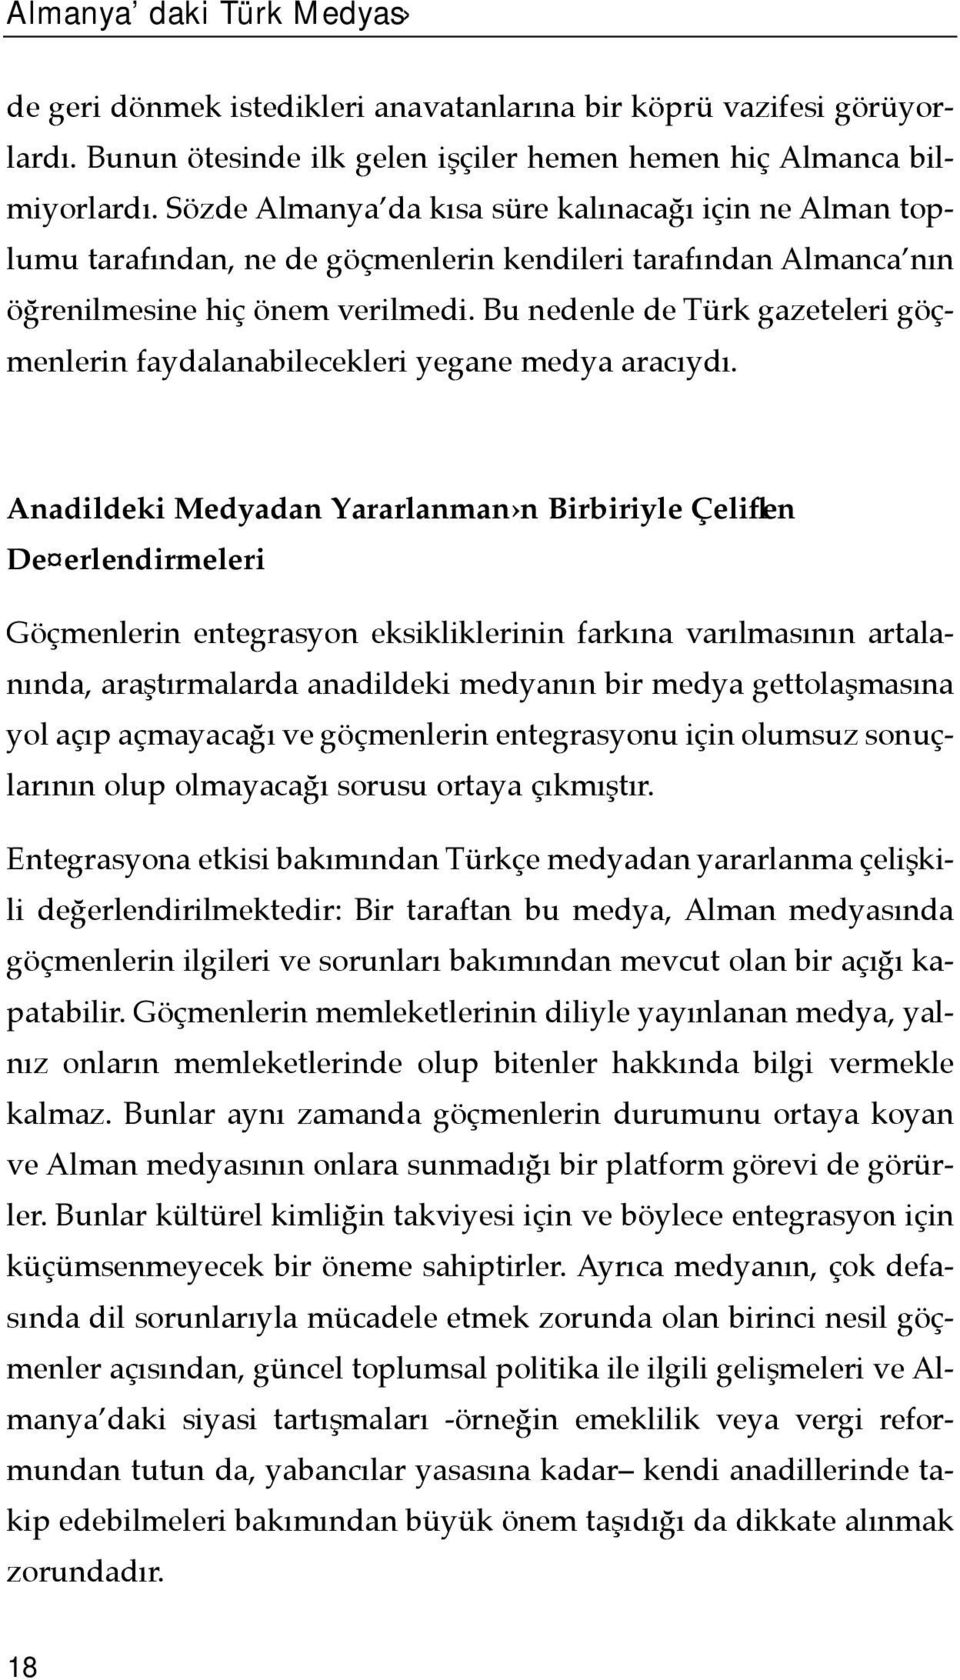 Bu nedenle de Türk gazeteleri göçmenlerin faydalanabilecekleri yegane medya aracõydõ.